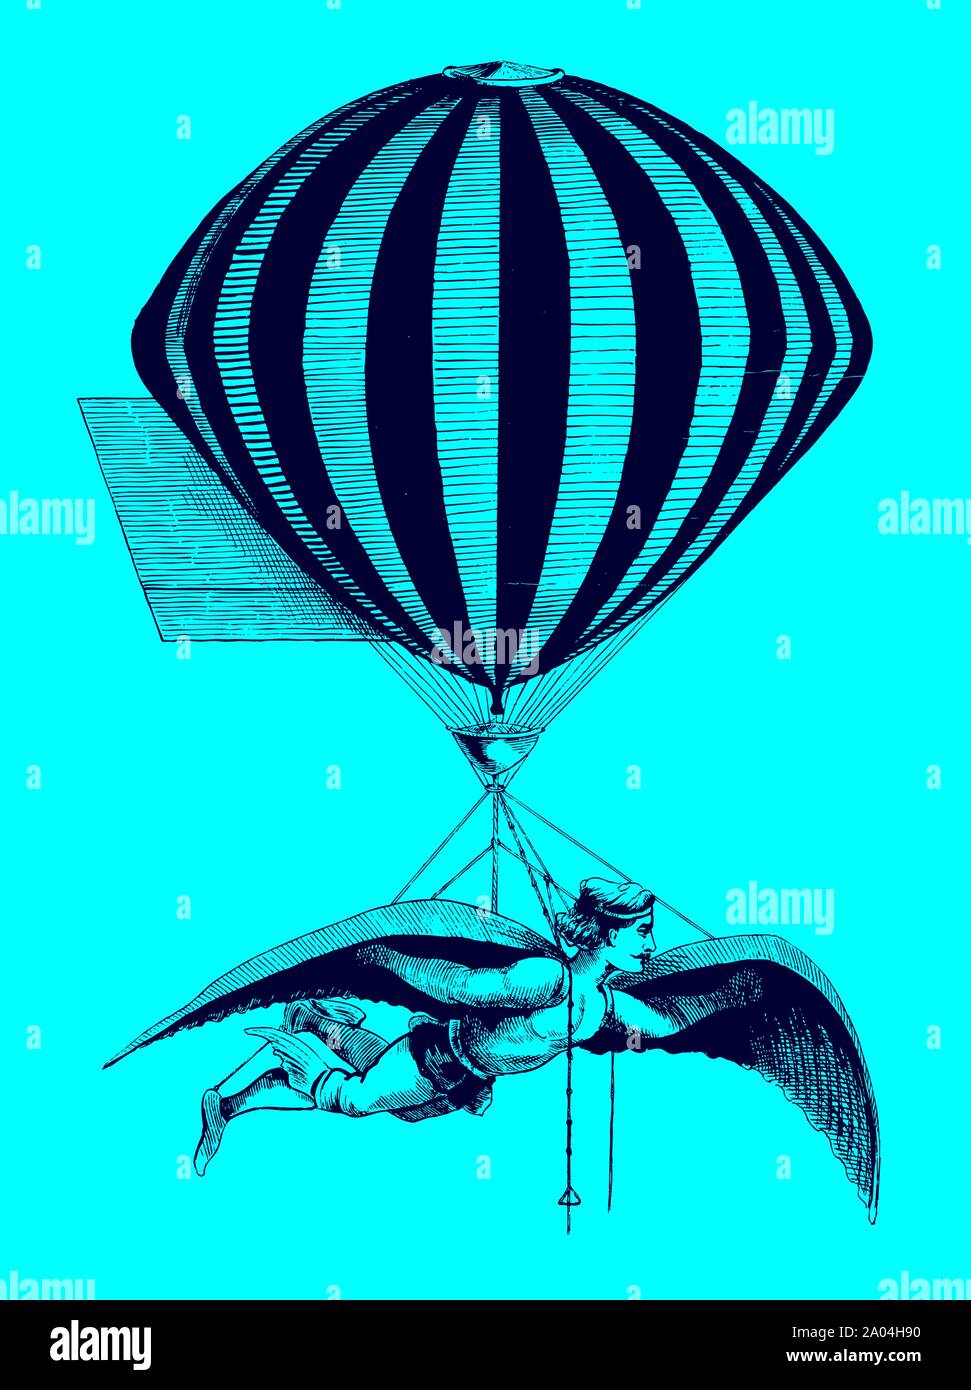 Aerialist historique portant les extensions lorsque suspendu à un ballon devant un fond bleu. Illustration après une gravure sur bois du xixe siècle. L'EDI Illustration de Vecteur